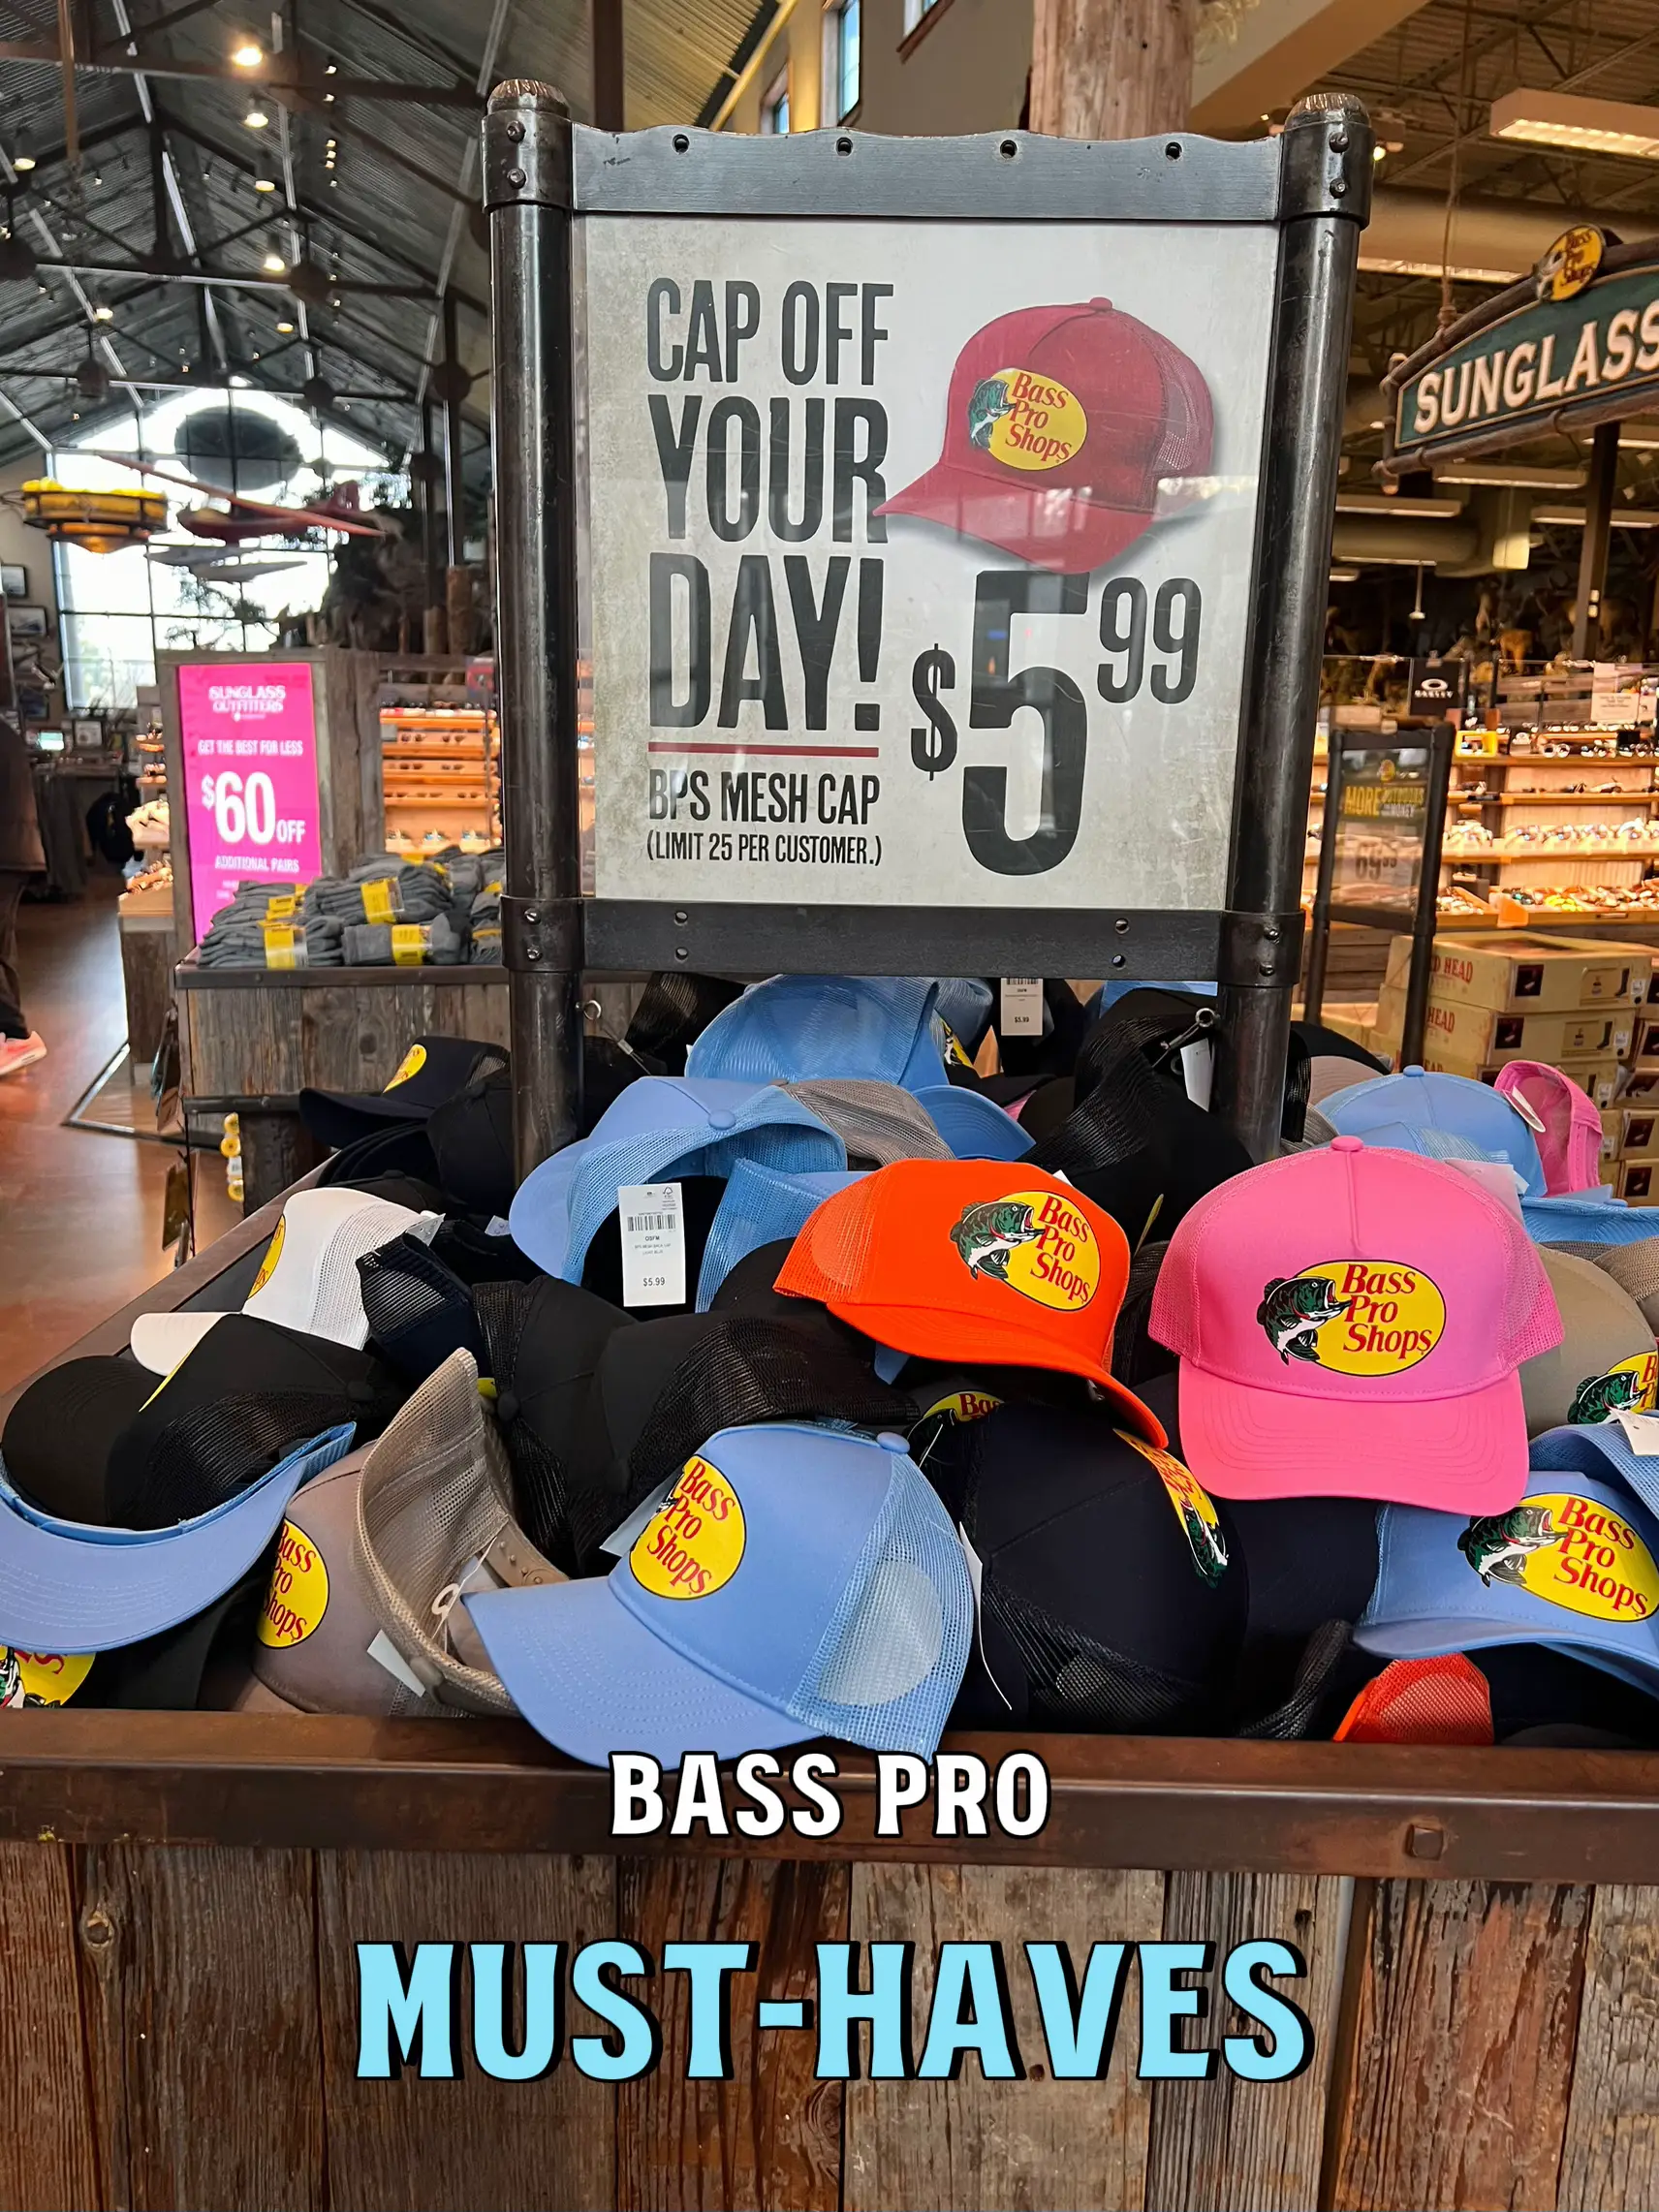 Bass pro shop hat  Bass pro shop hat, Outfits with hats, Bass pro shop